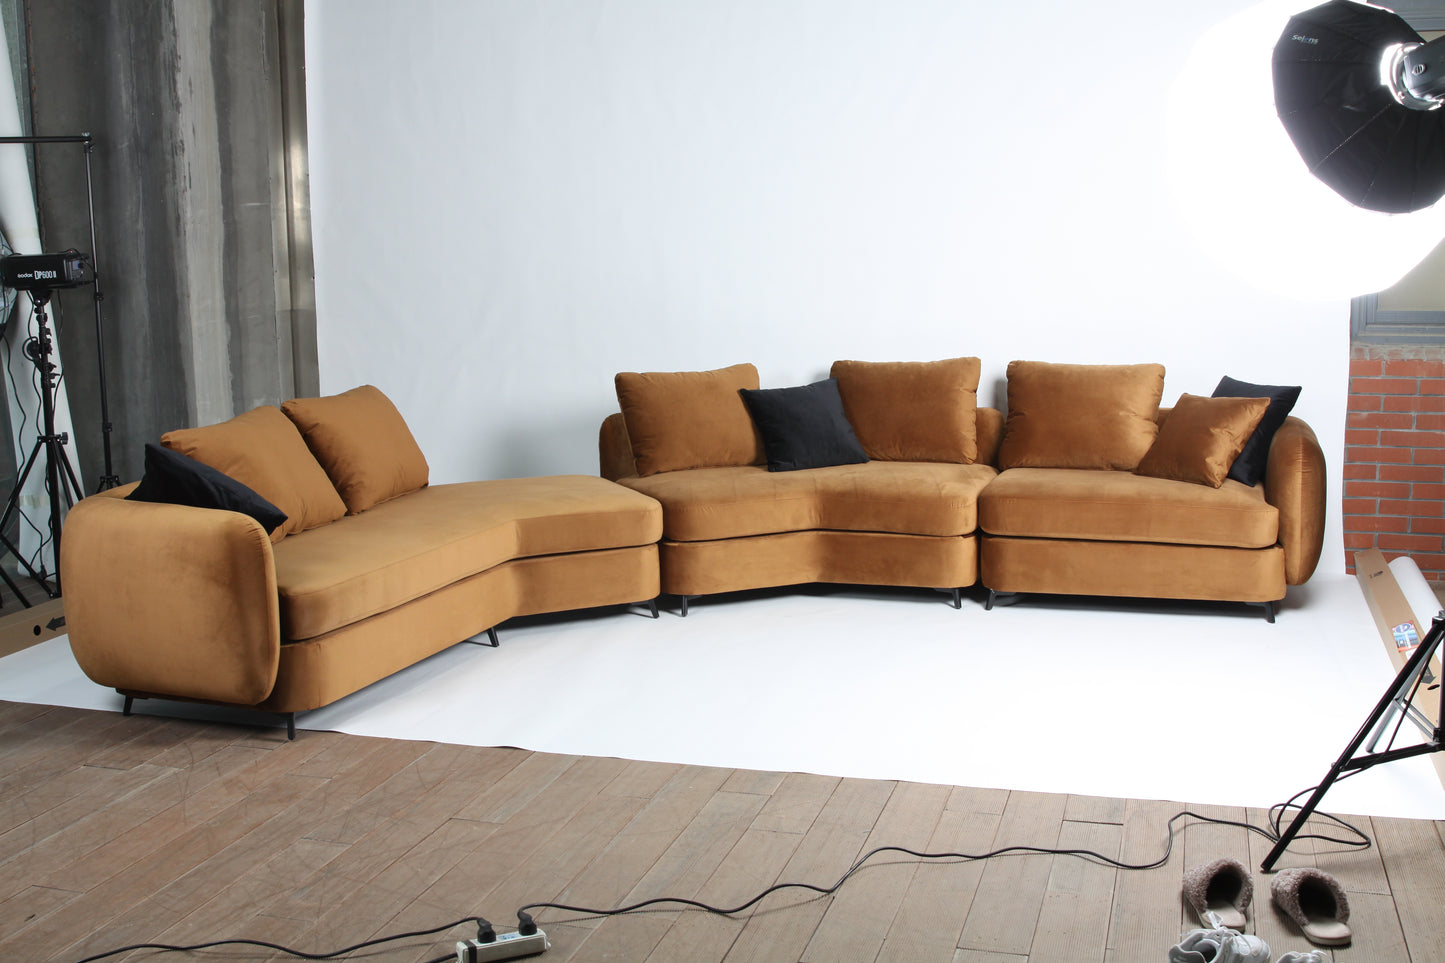 The Trinity Sofa